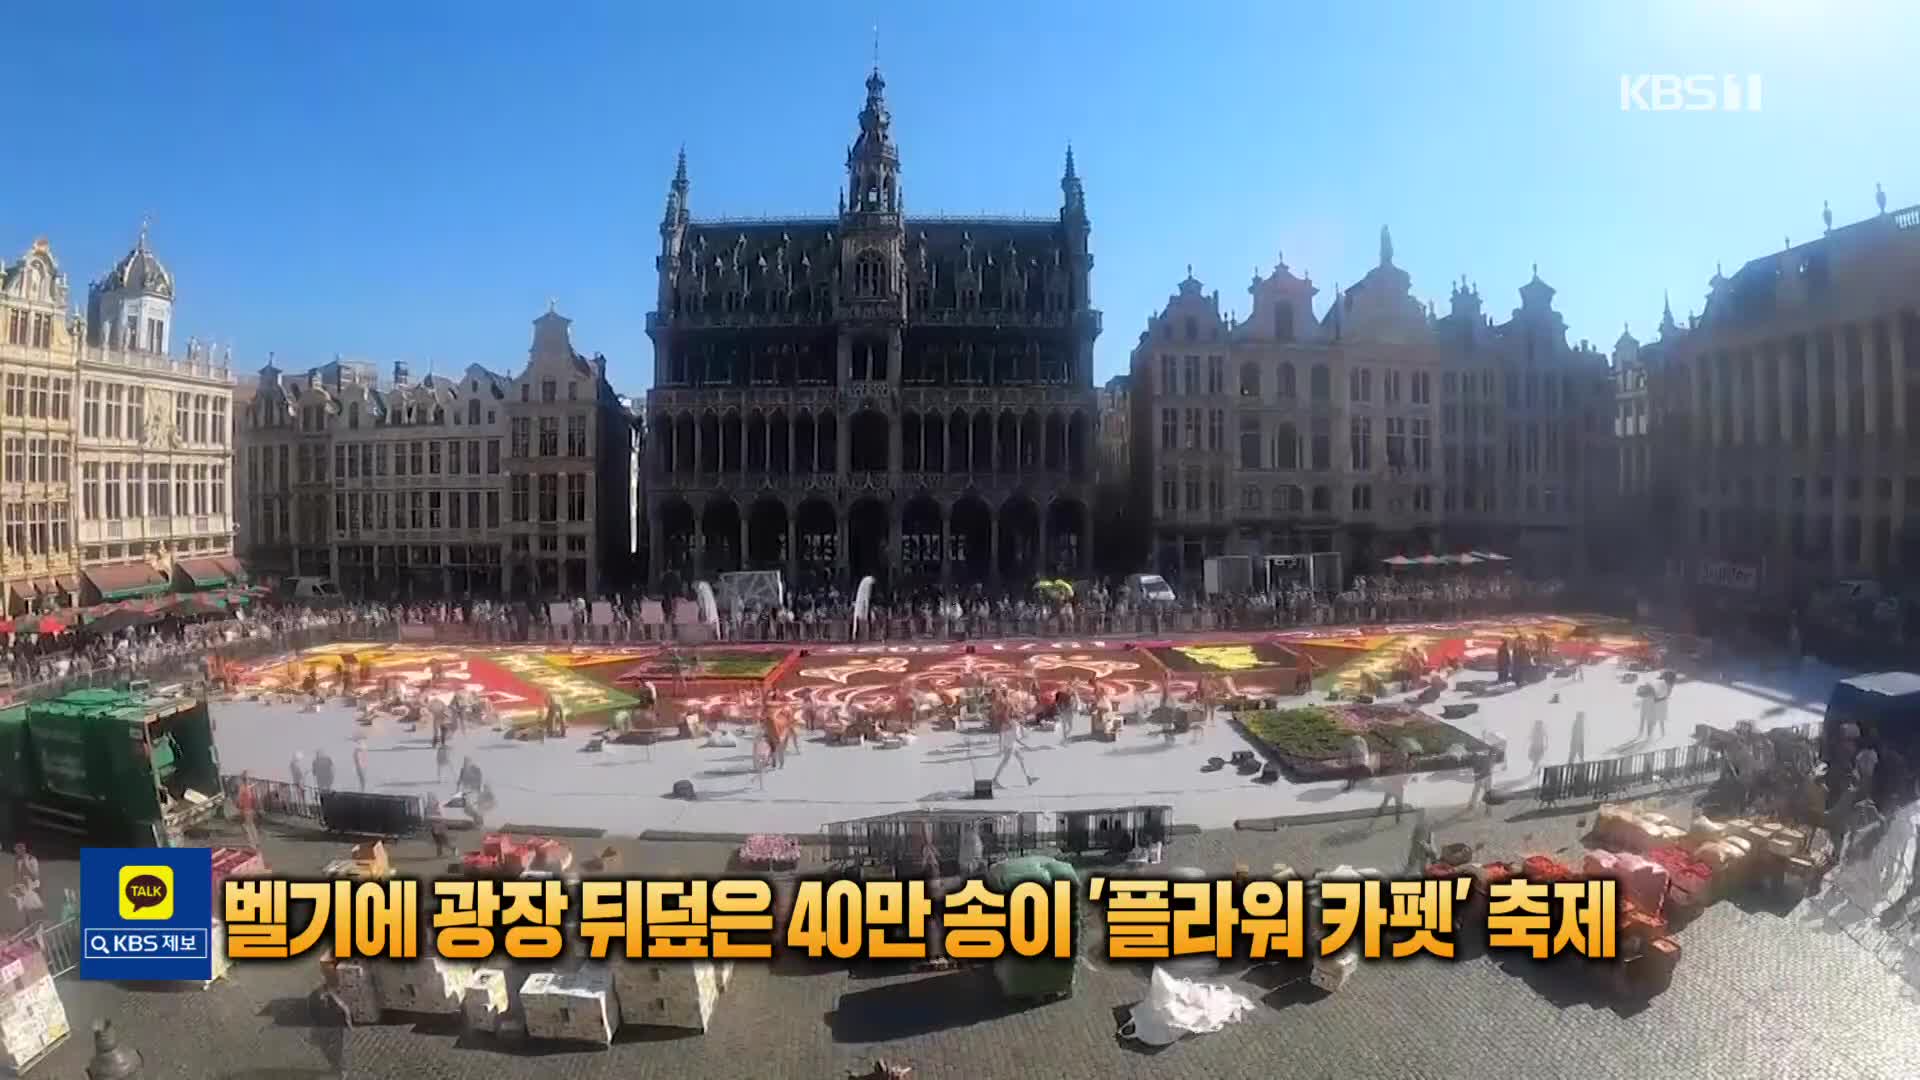 [톡톡 지구촌] 벨기에 광장 뒤덮은 40만 송이 ‘플라워 카펫’ 축제